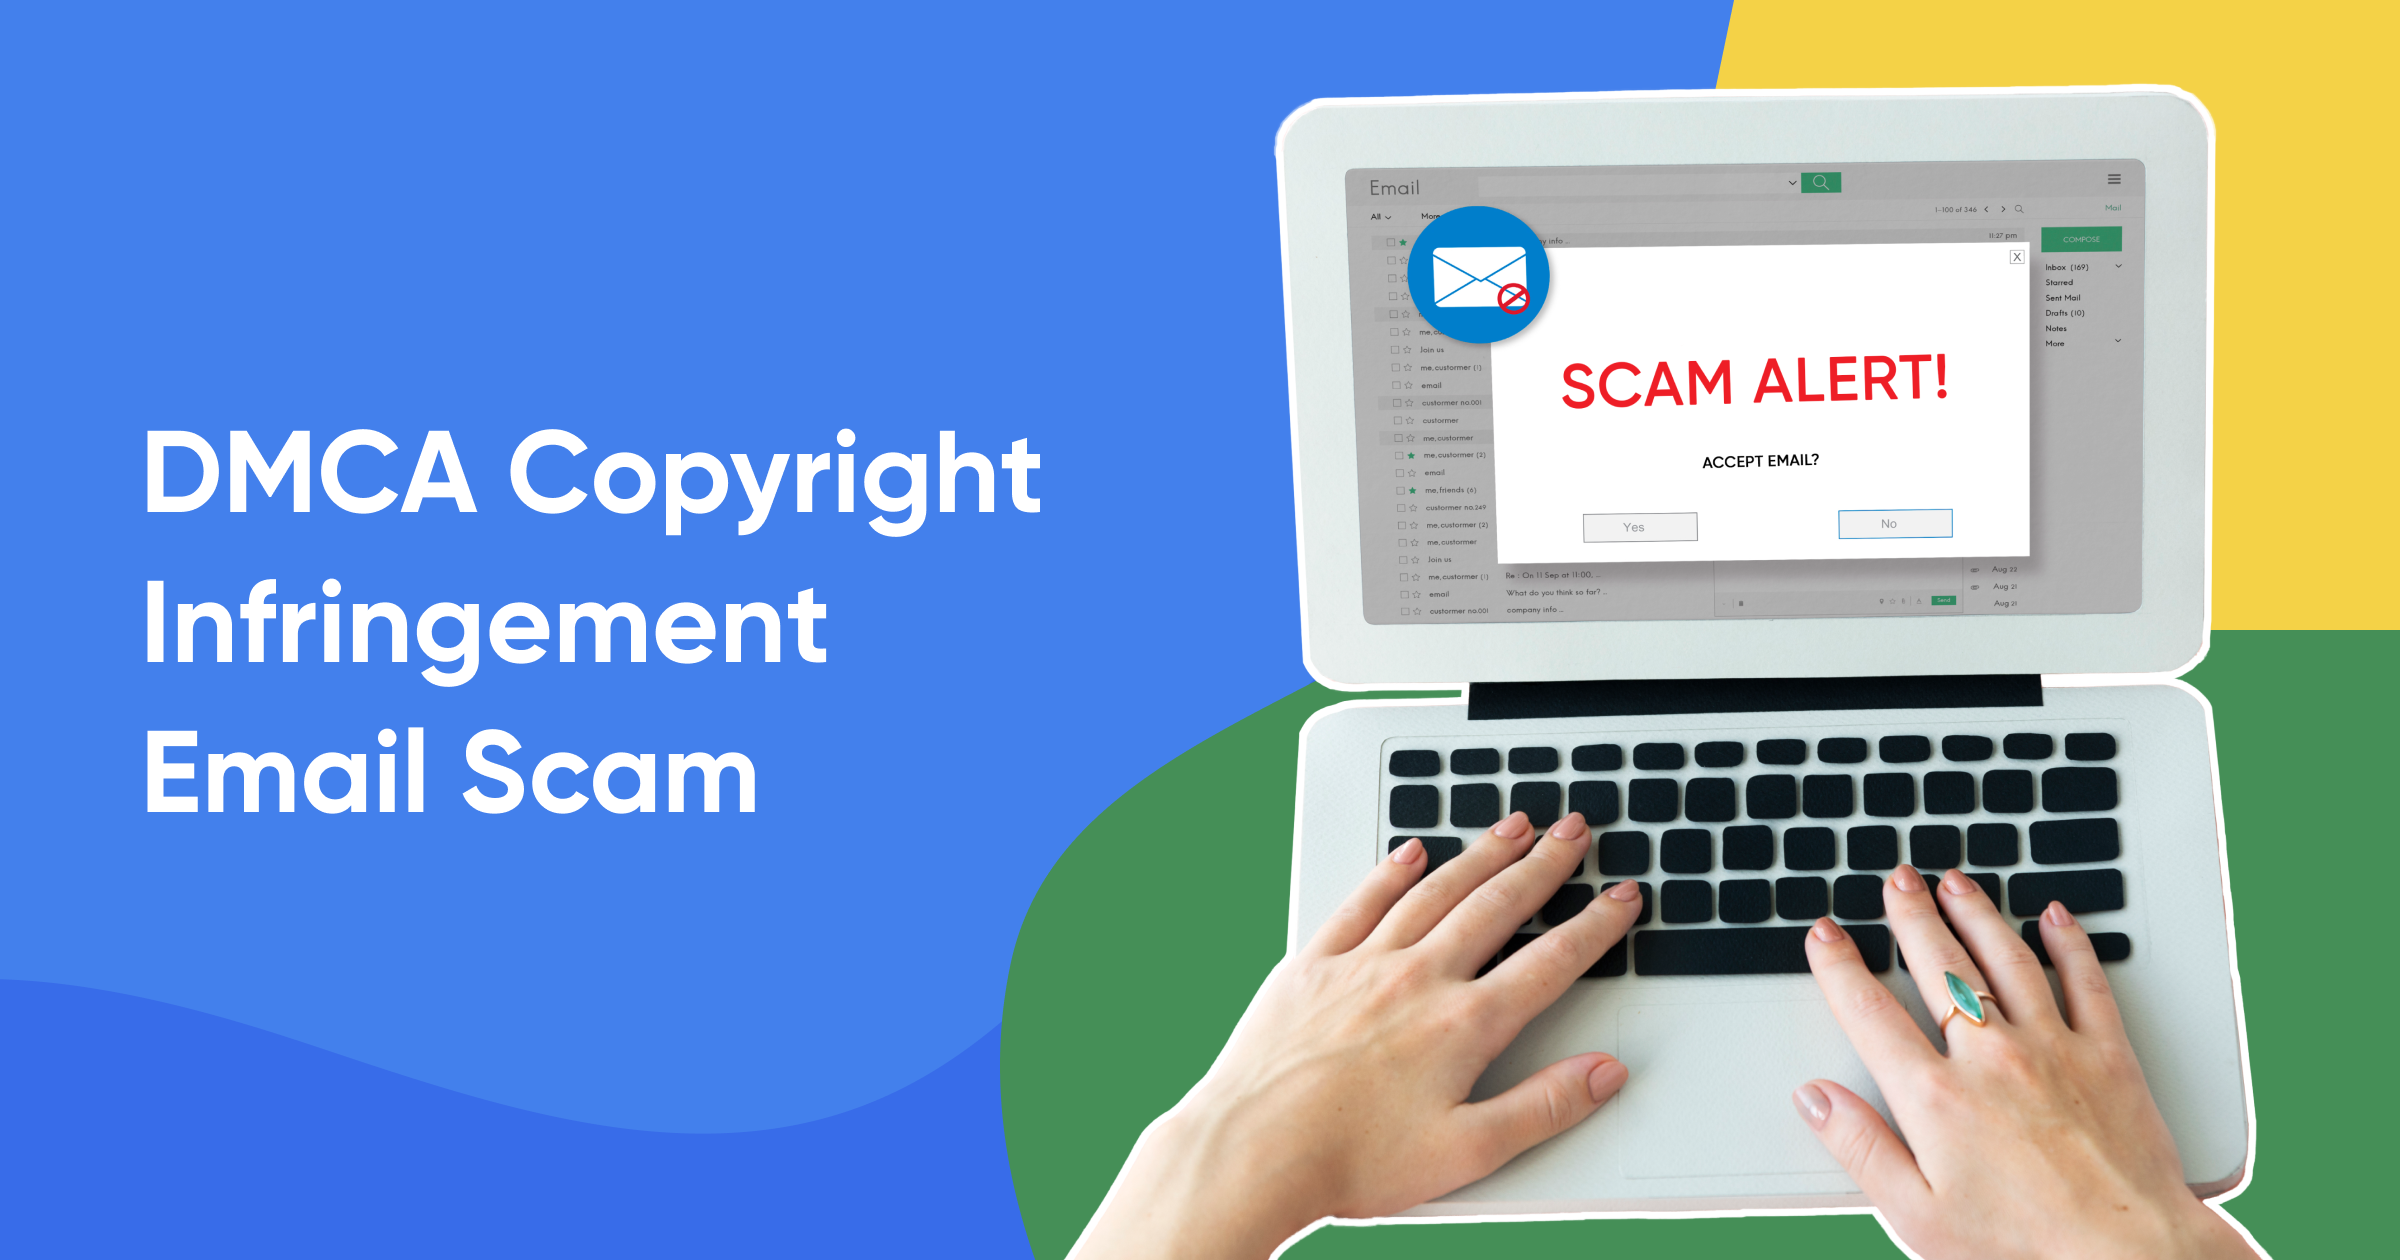 dmca copyright infringement email scam